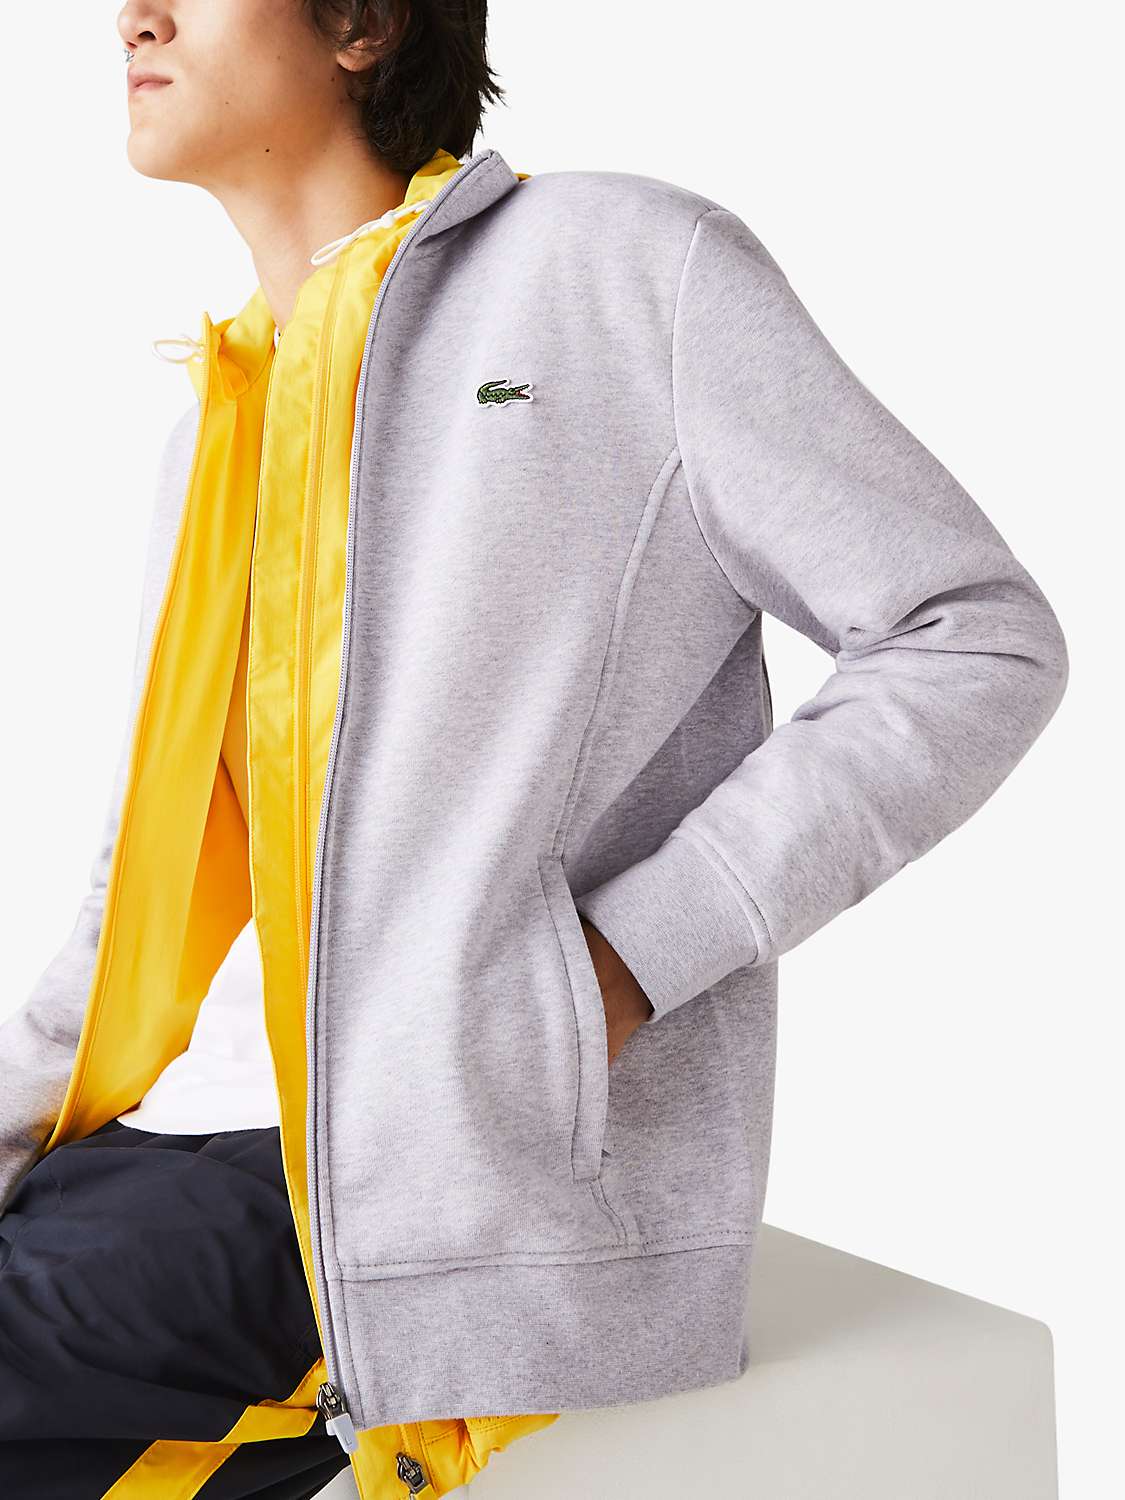 Buy Lacoste Cotton Blend Zip Funnel Neck Sweatshirt, Grey Online at johnlewis.com